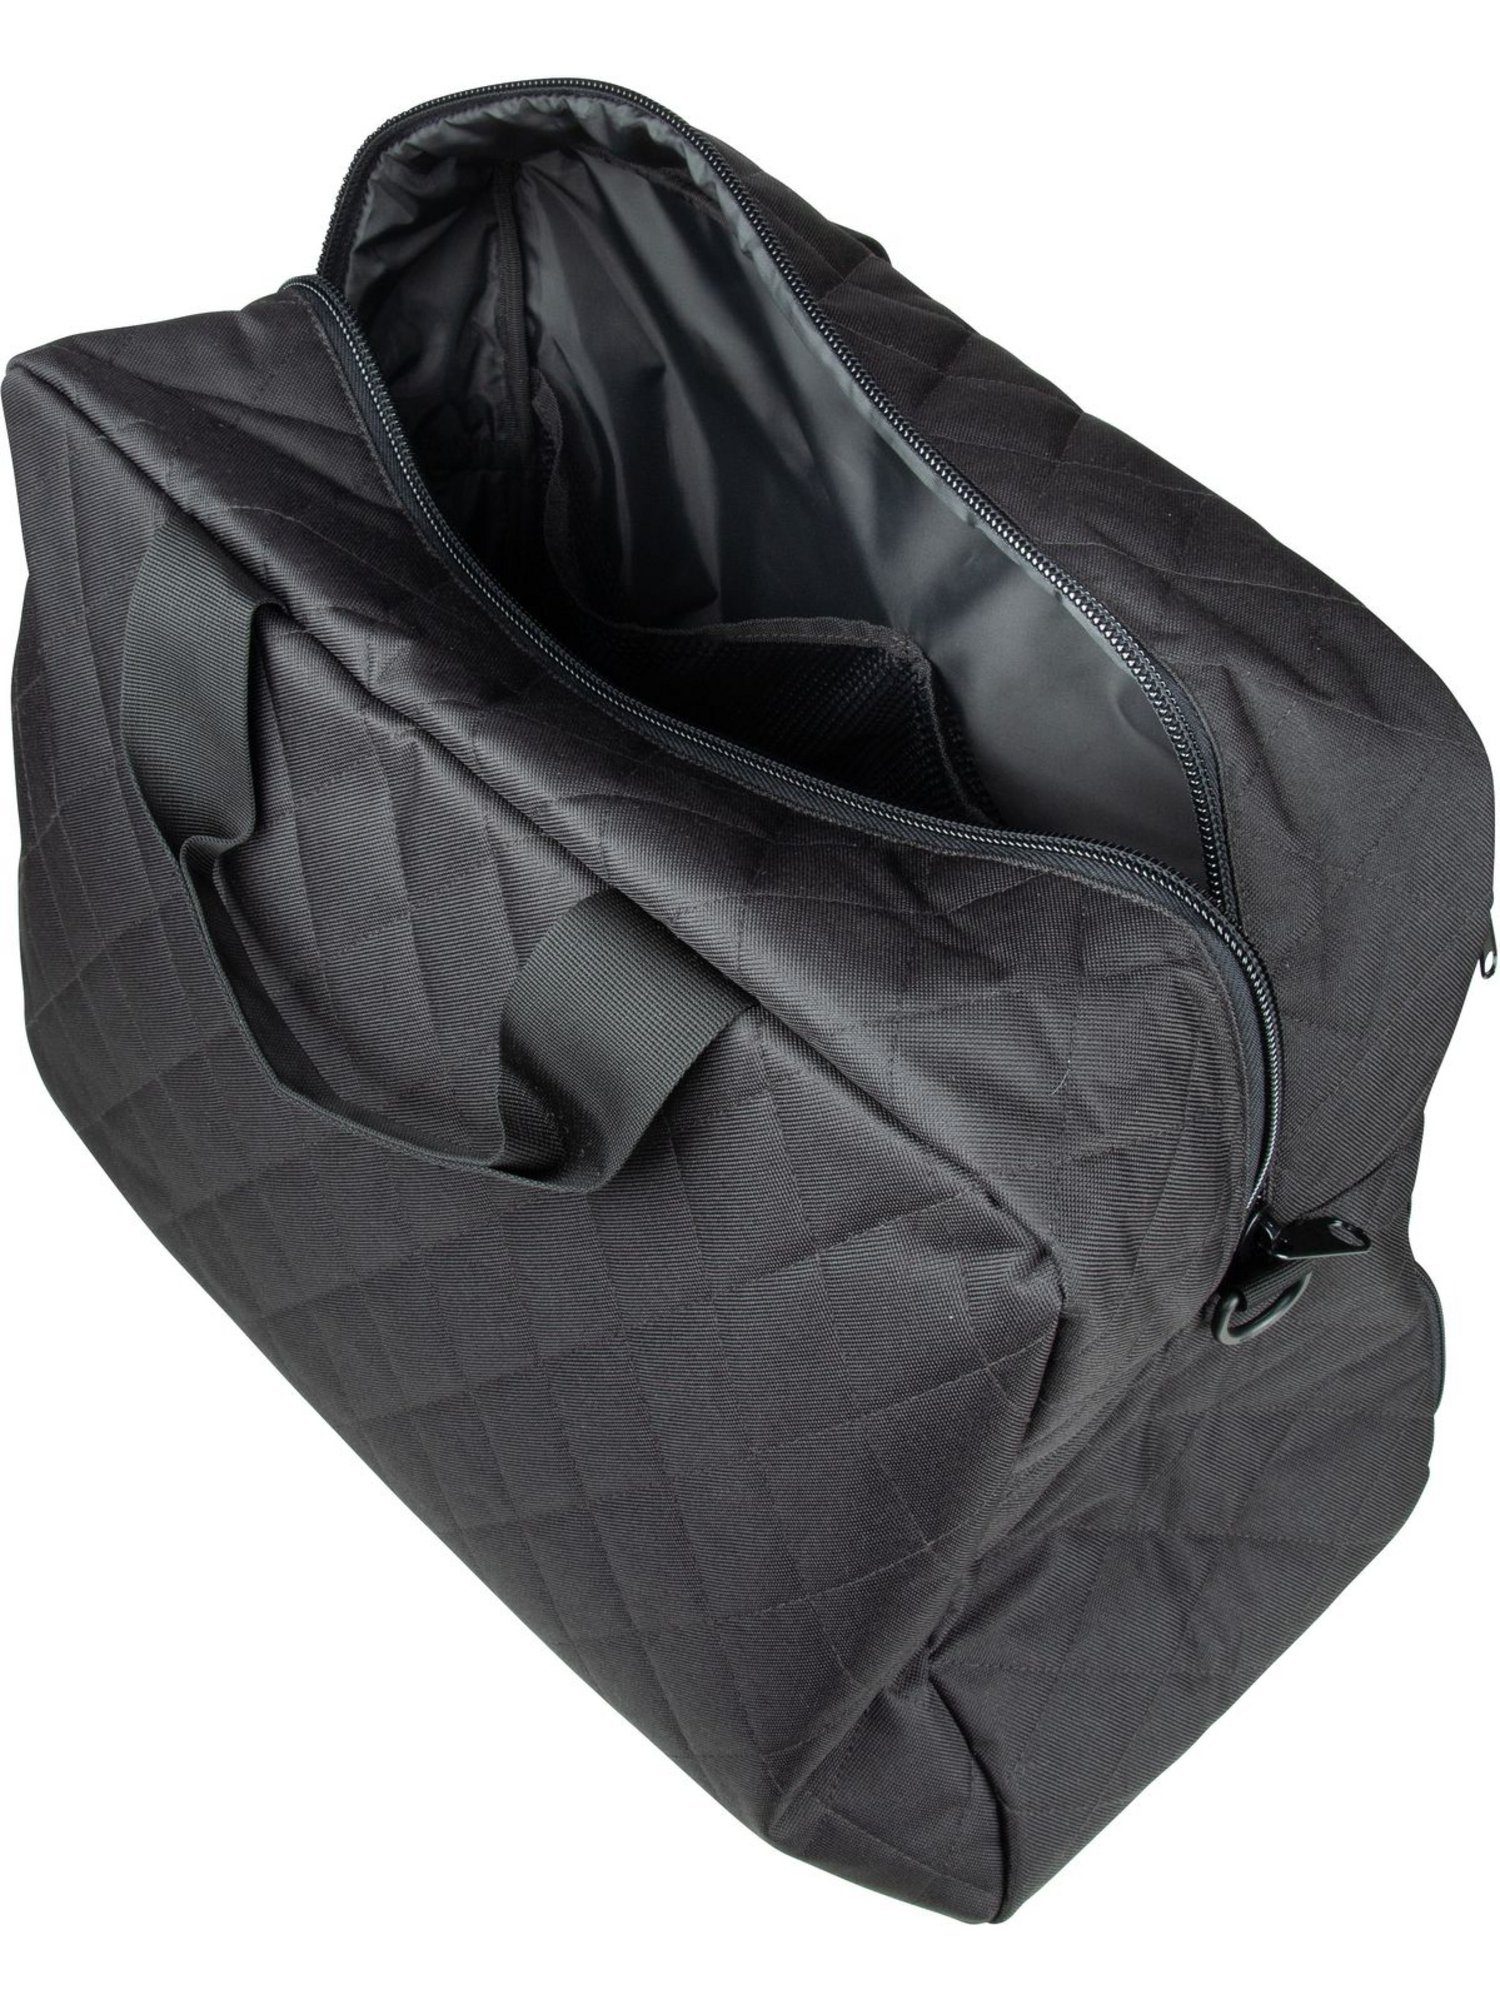 REISENTHEL® Weekender duffelbag M Rhombus Black